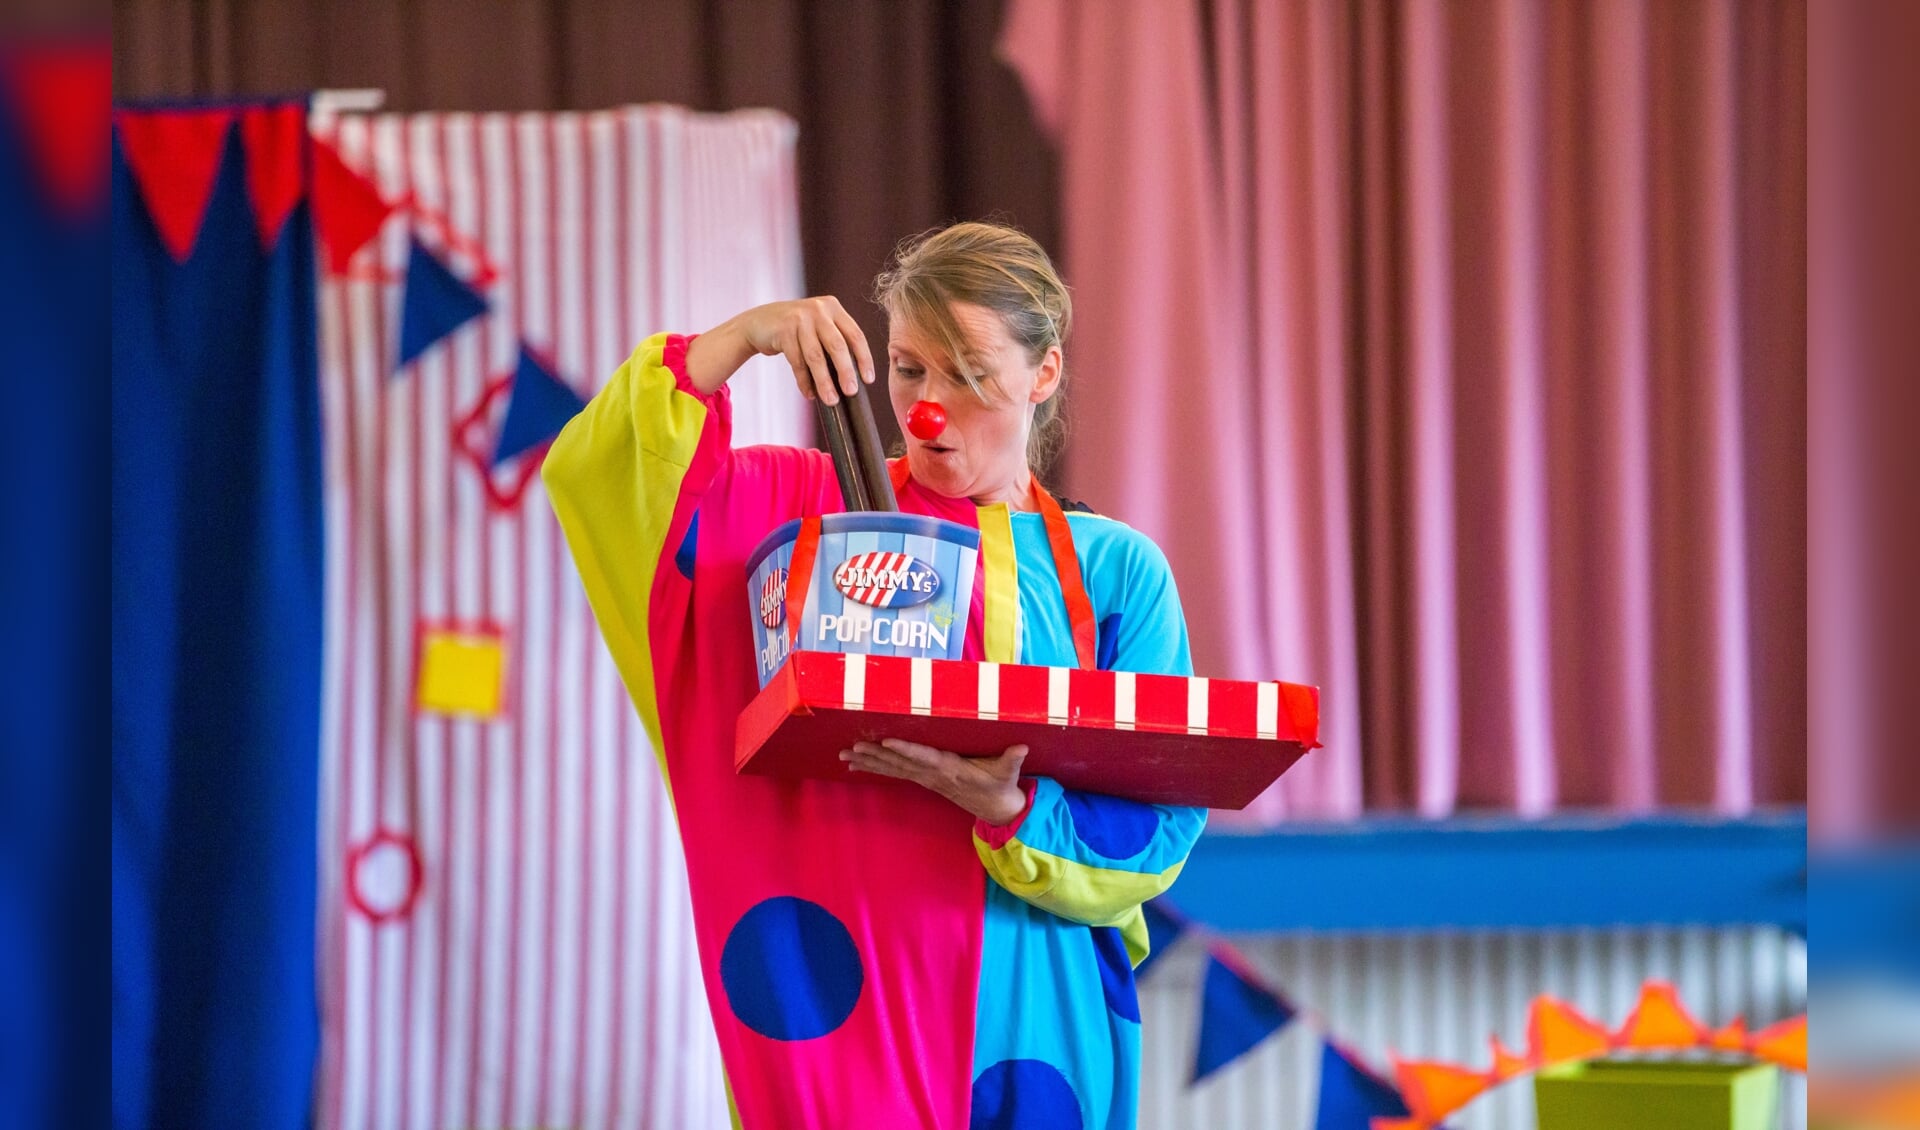 Clowntje Tiereliet (Melissa Kramer) zoekt naar zijn blauwe stip. Foto: Marieke de Vries